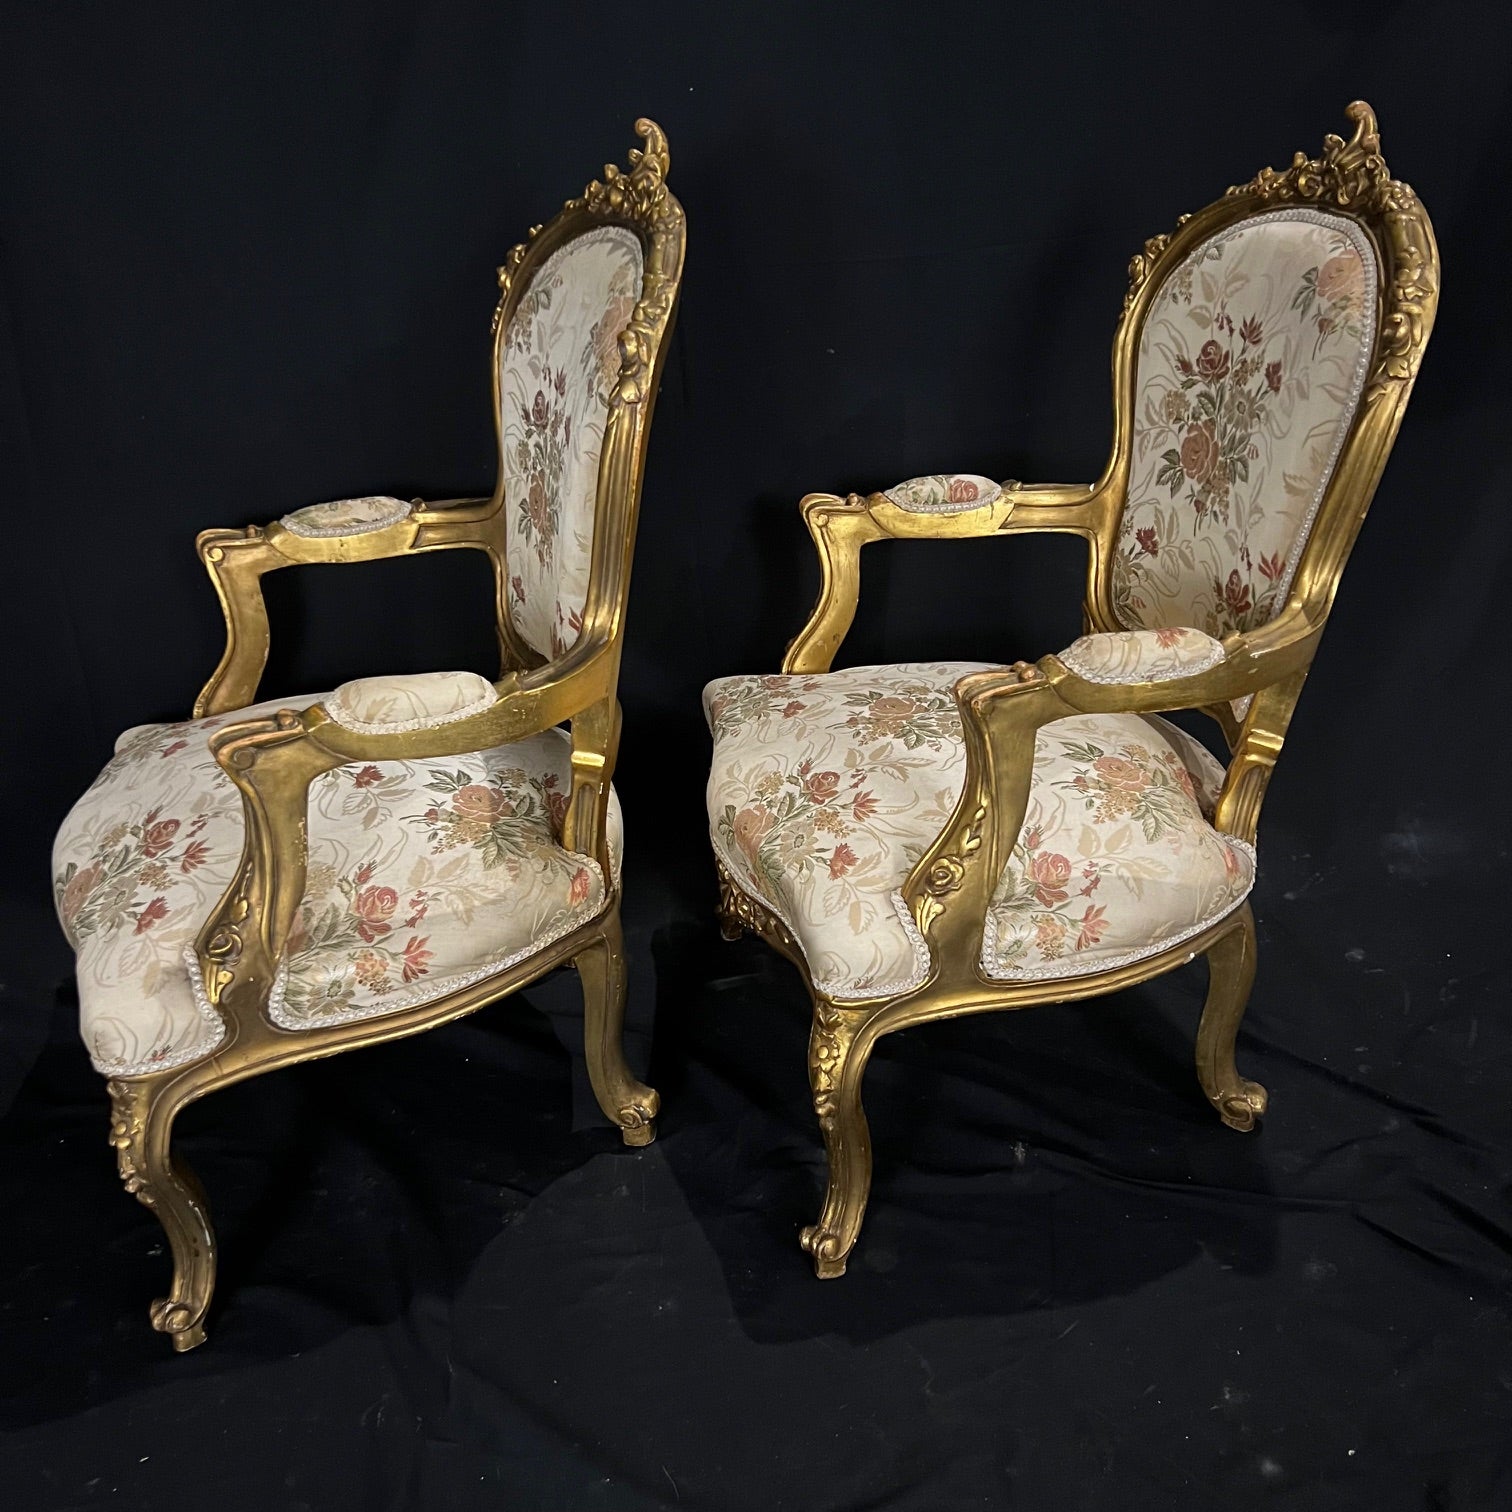 Deux fauteuils ouverts en bois doré de style Louis XV, chacun avec un dossier en cartouche, surmonté d'une sculpture florale, des accoudoirs en volutes et des sièges en forme reposant sur des pieds cabriole. Tapissé d'un tissu floral polychrome. #